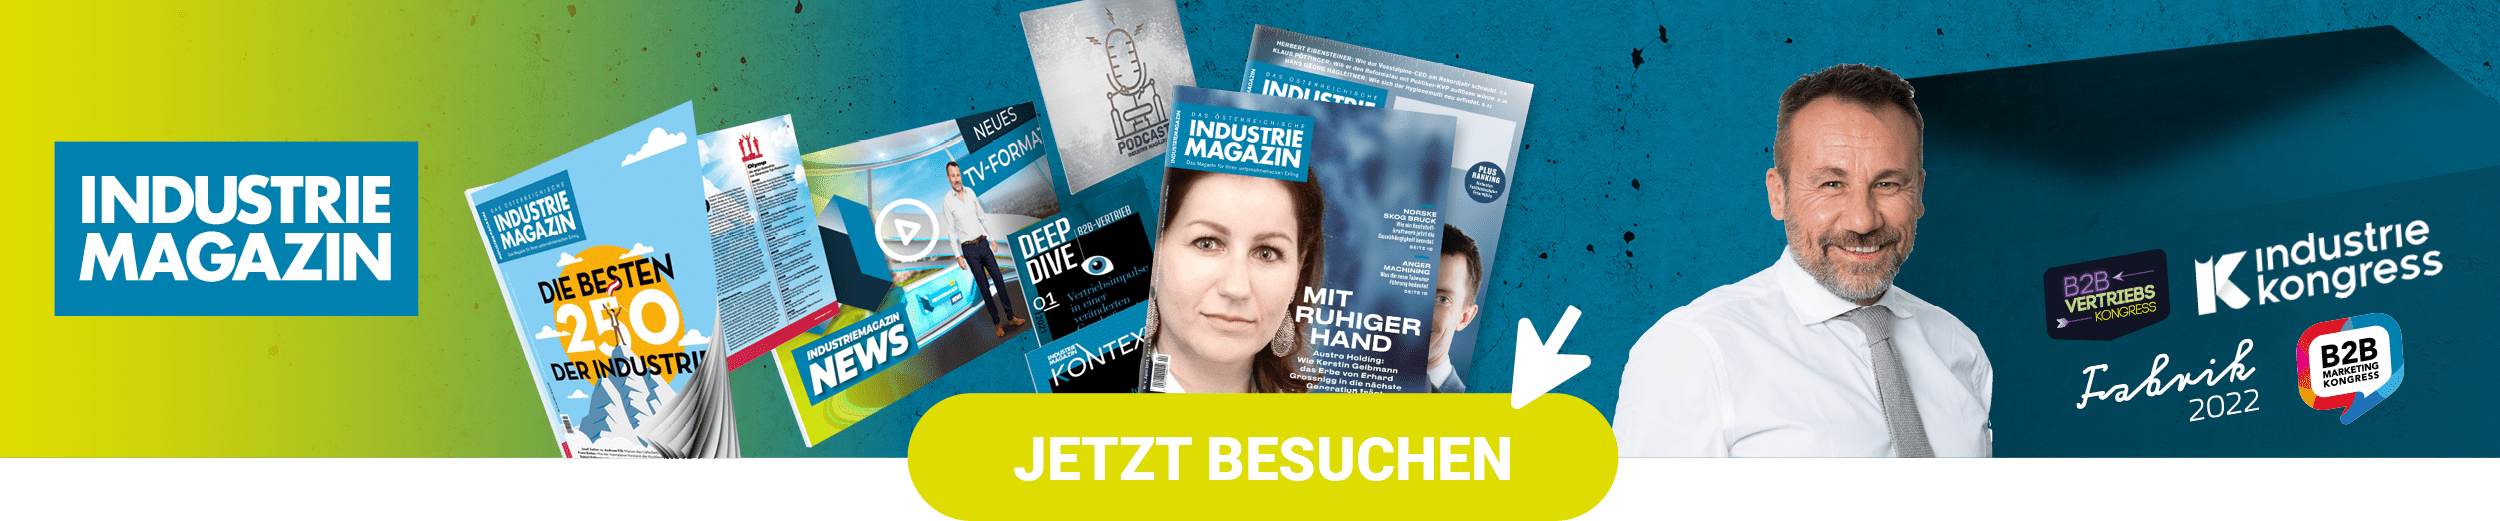 Markenwelt Banner Industriemagazin